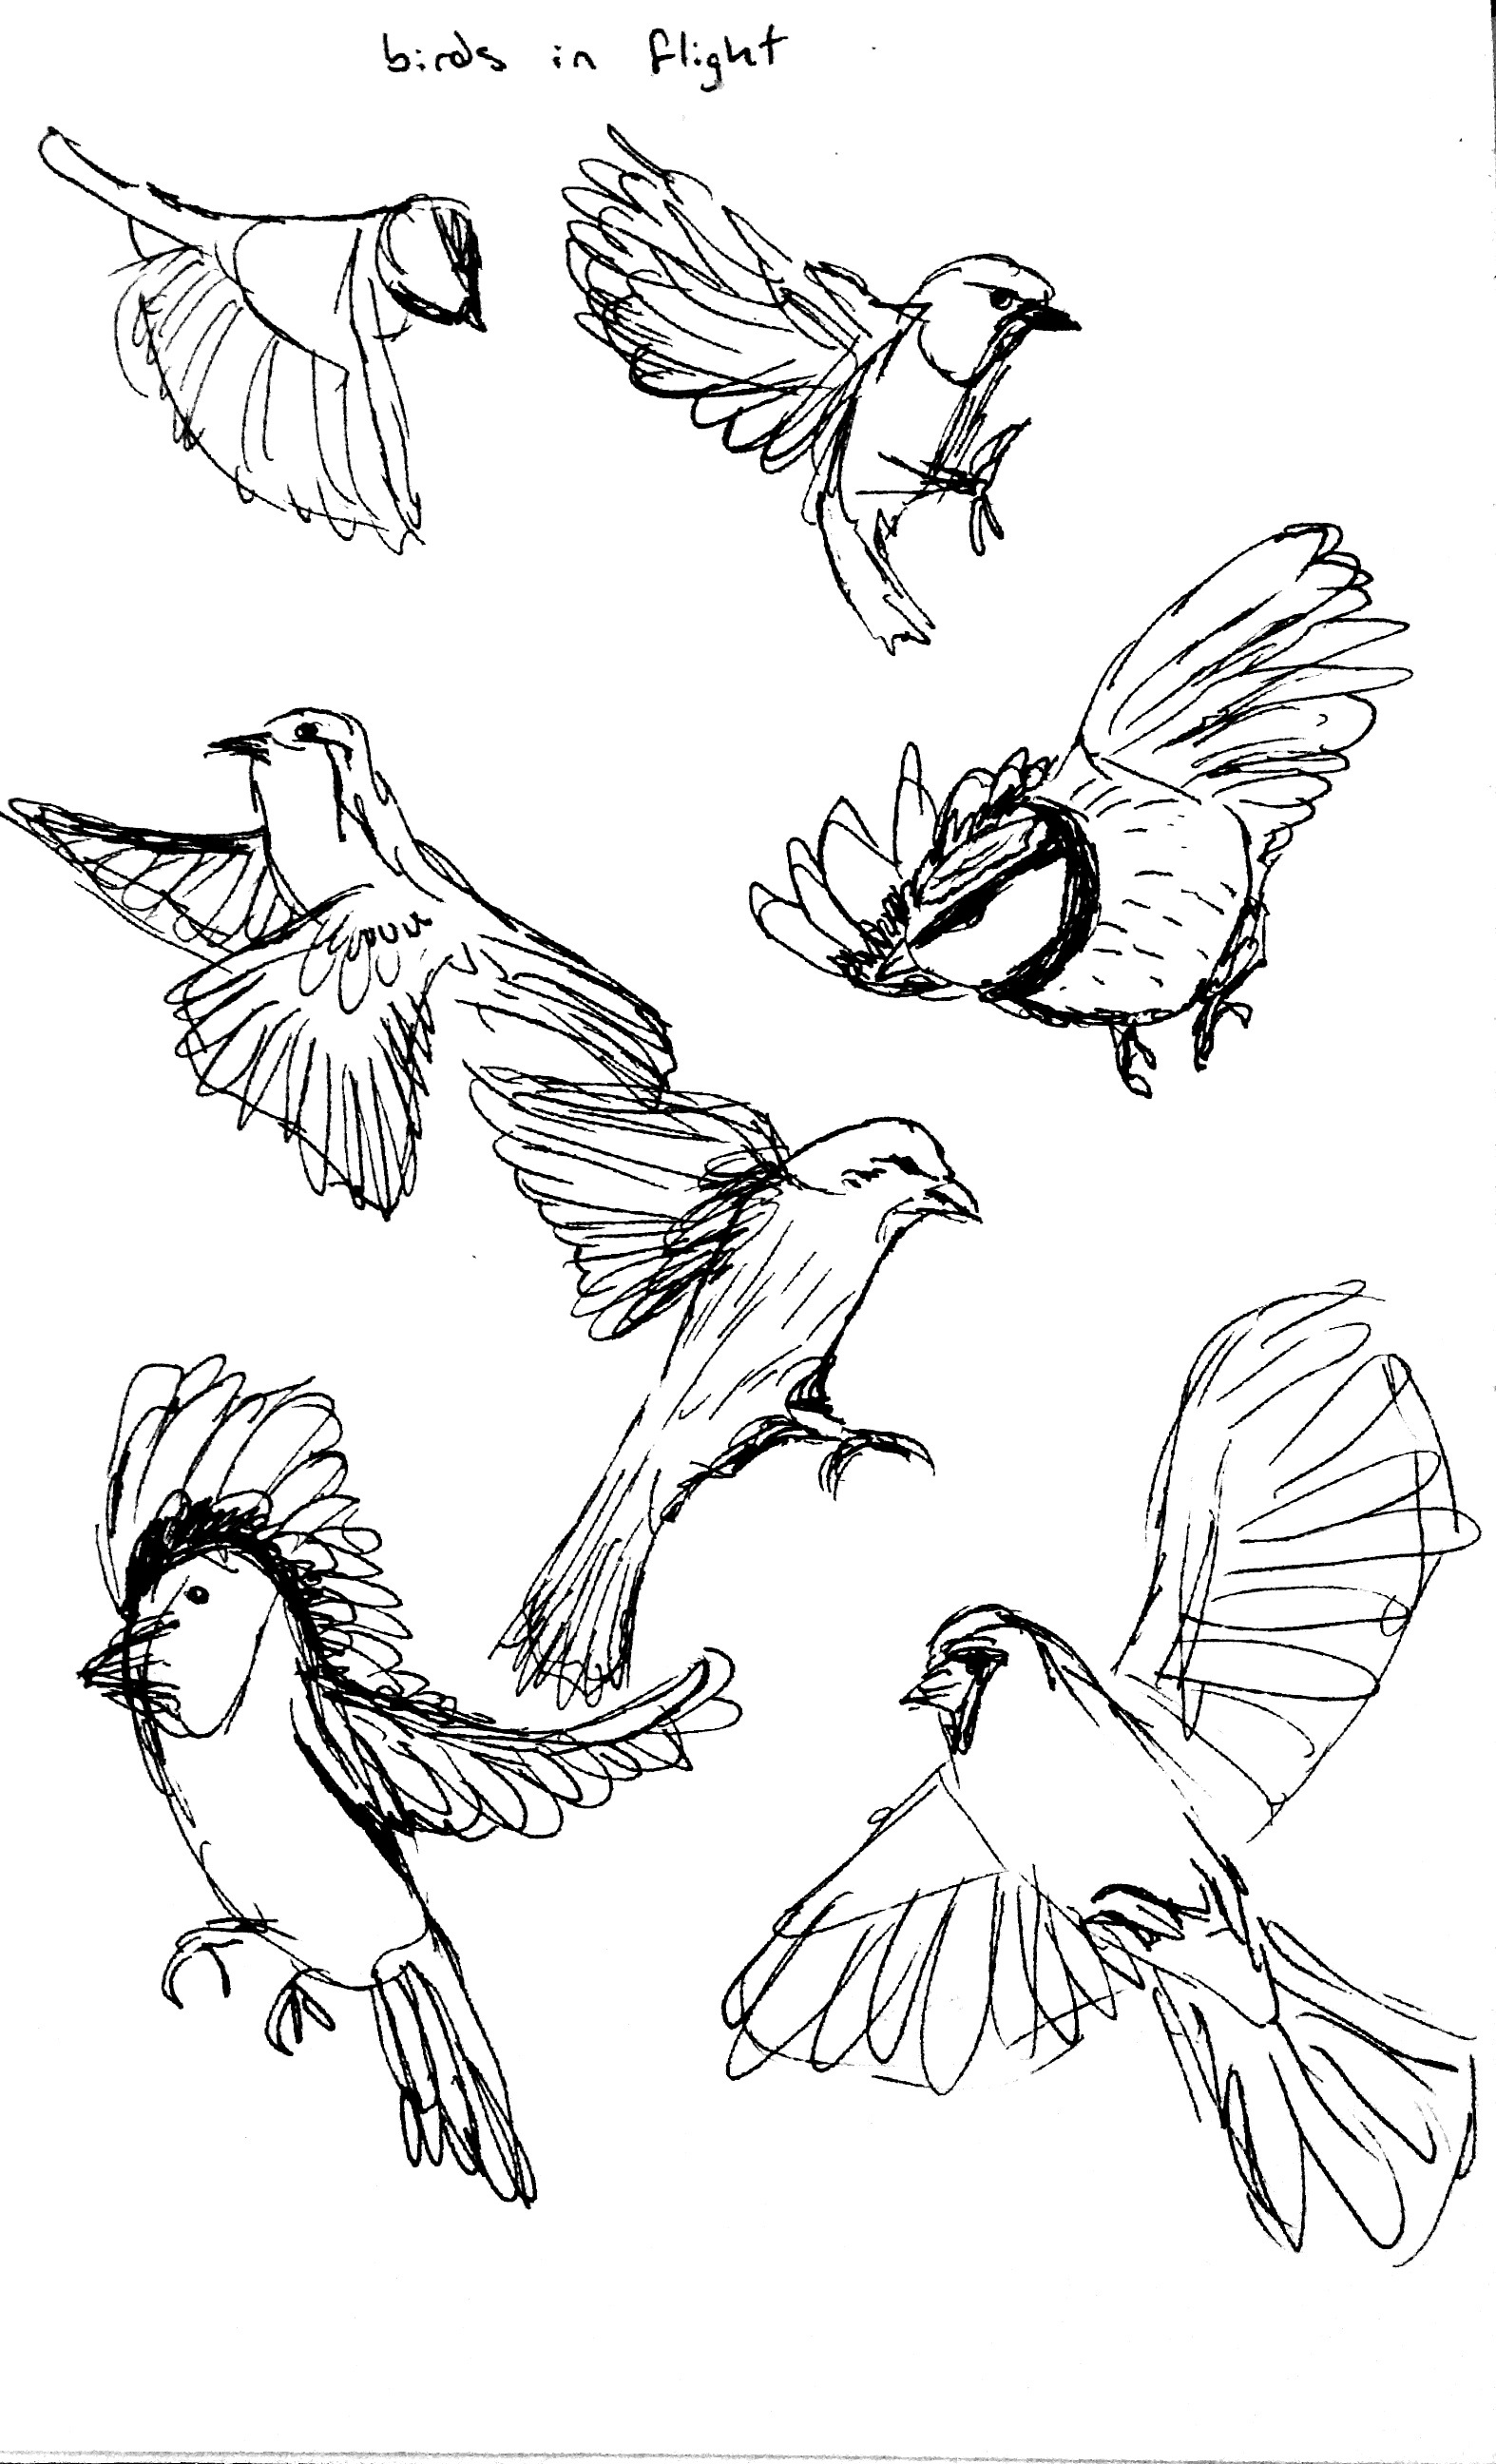 Birds in Flight in PFW: Sketch Forum